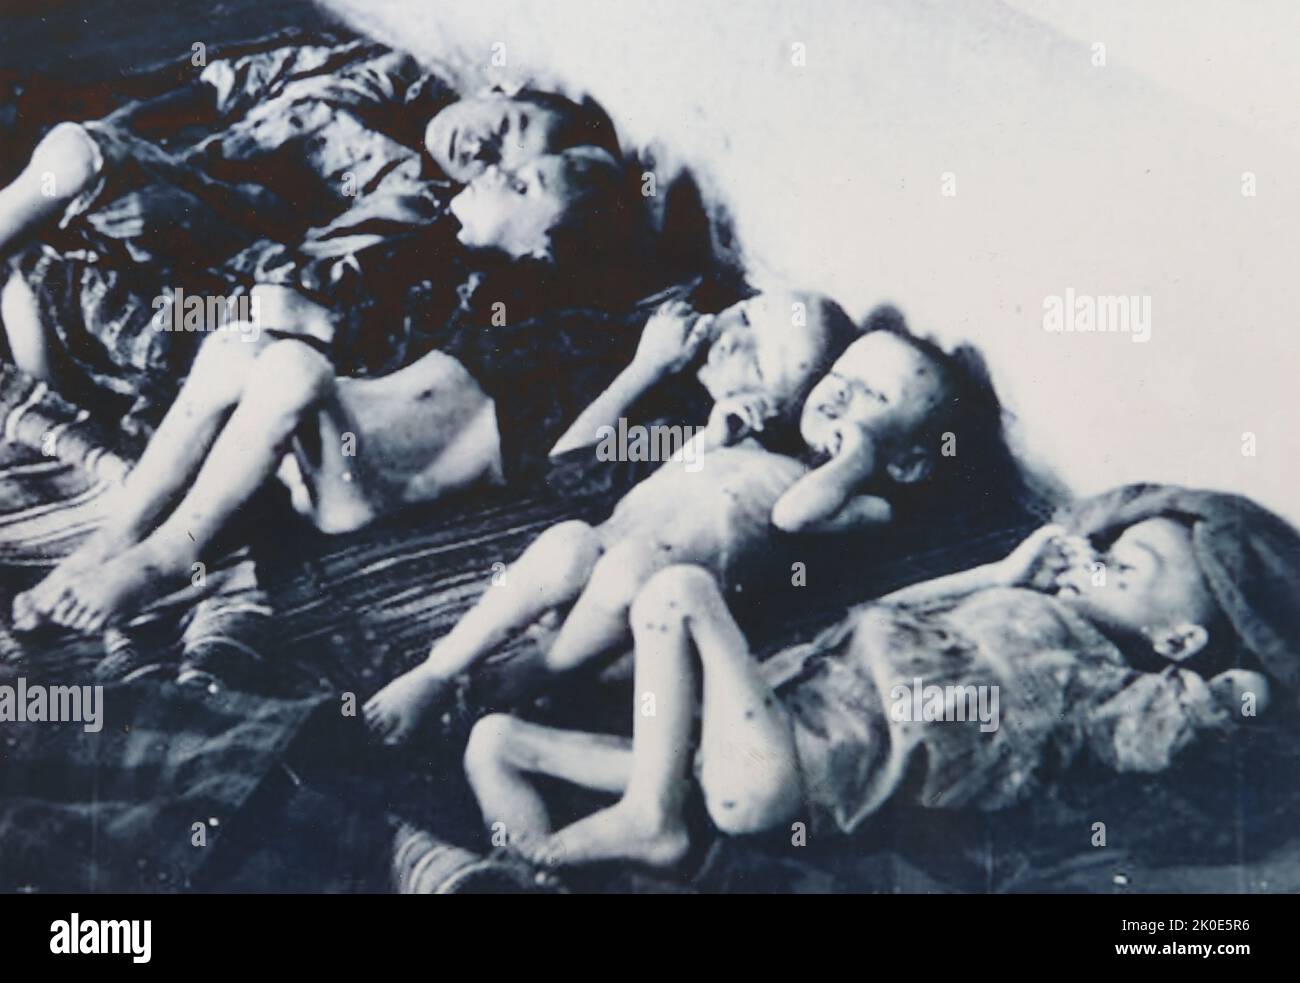 Les enfants prisonniers meurent de faim au camp de concentration de Jasenovac contrôlé par Ustasa. L'Ustasa (mouvement révolutionnaire croate) ou ustase était une organisation fasciste croate, entre 1929 et 1945. Jasenovac était un camp de concentration et d'extermination établi en Yougoslavie occupée pendant la Seconde Guerre mondiale Banque D'Images